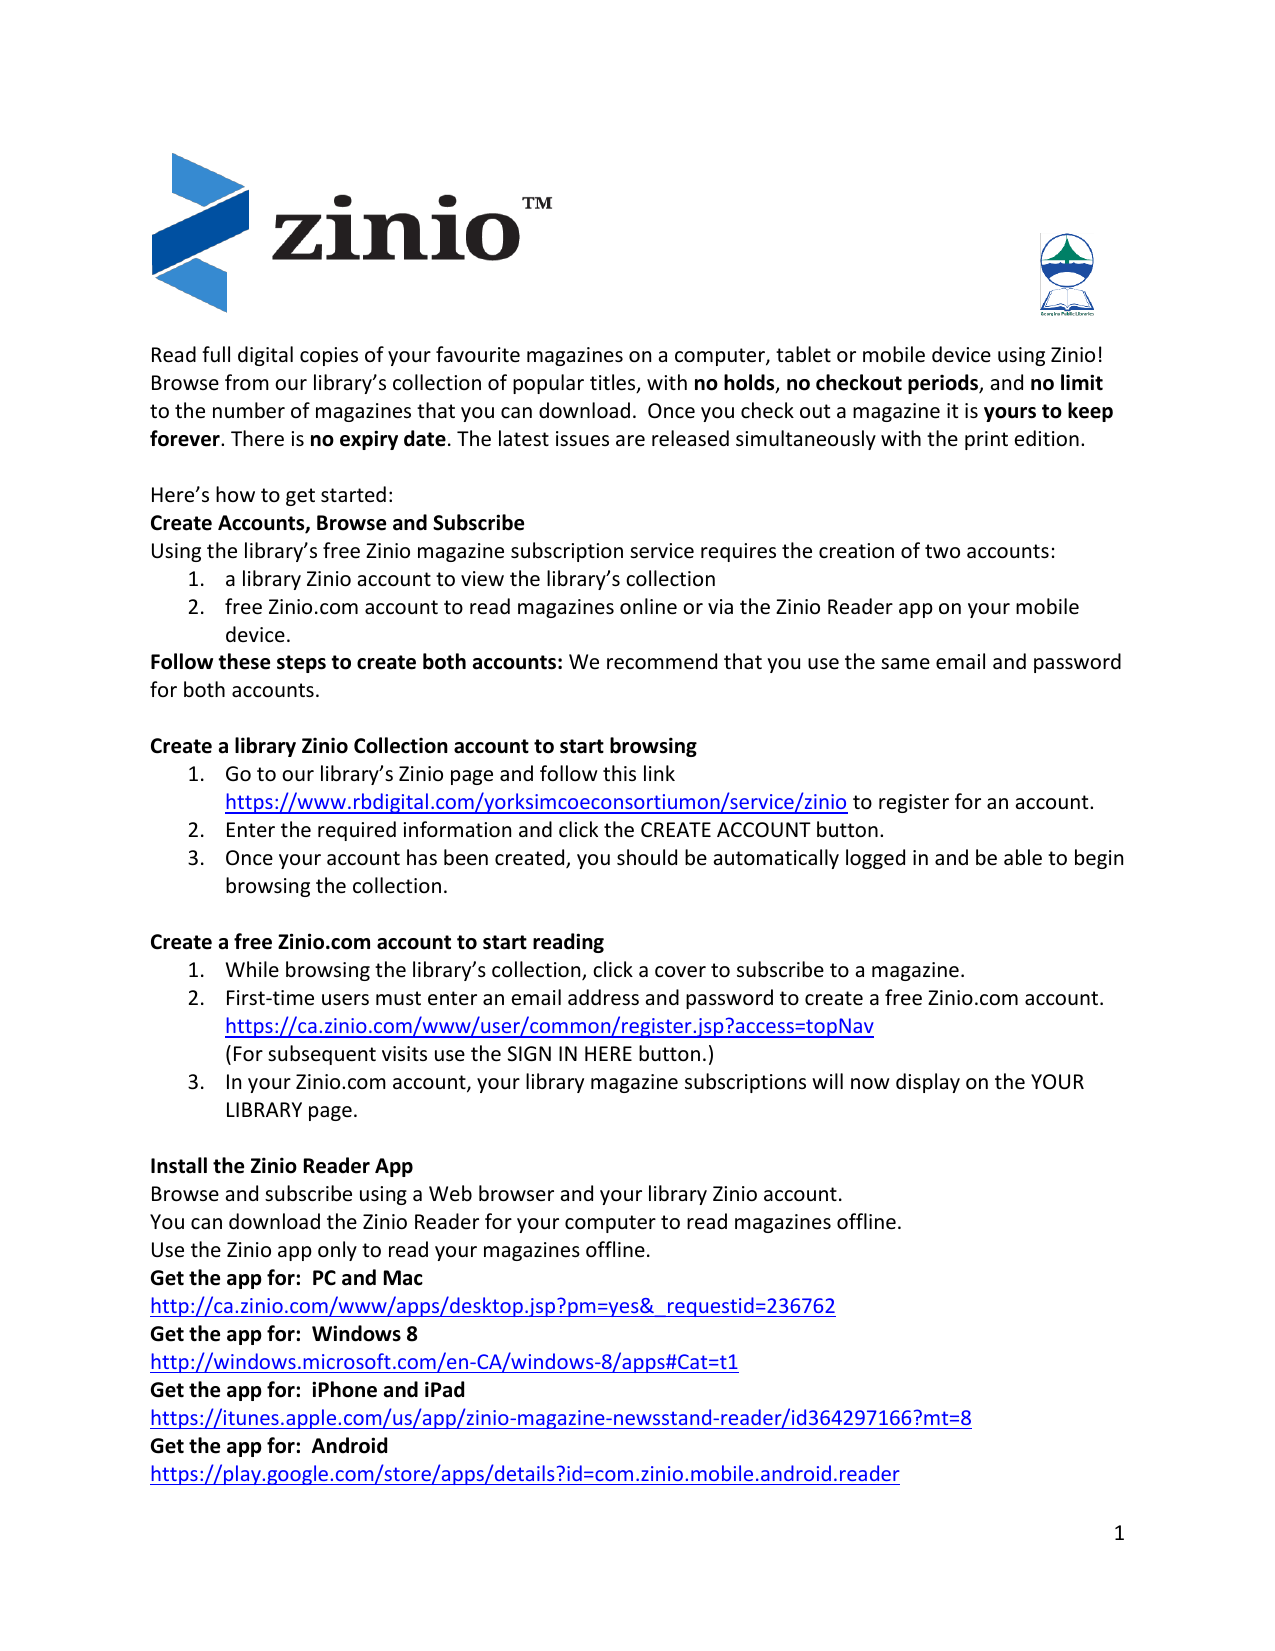 zinio reader 5 download for mac